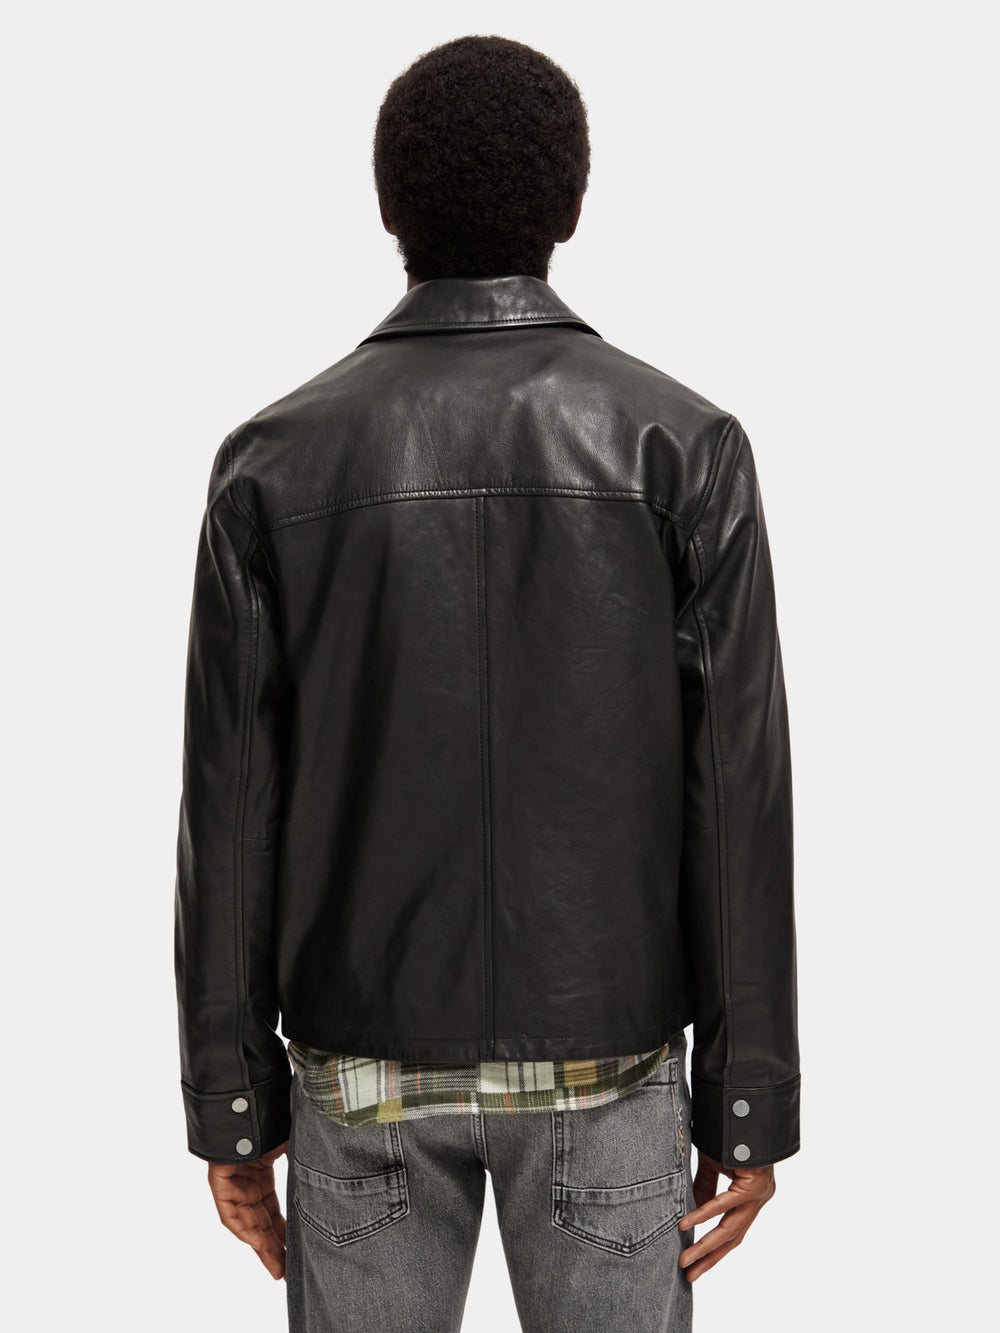 Leather biker jacket - Scotch & Soda NZ